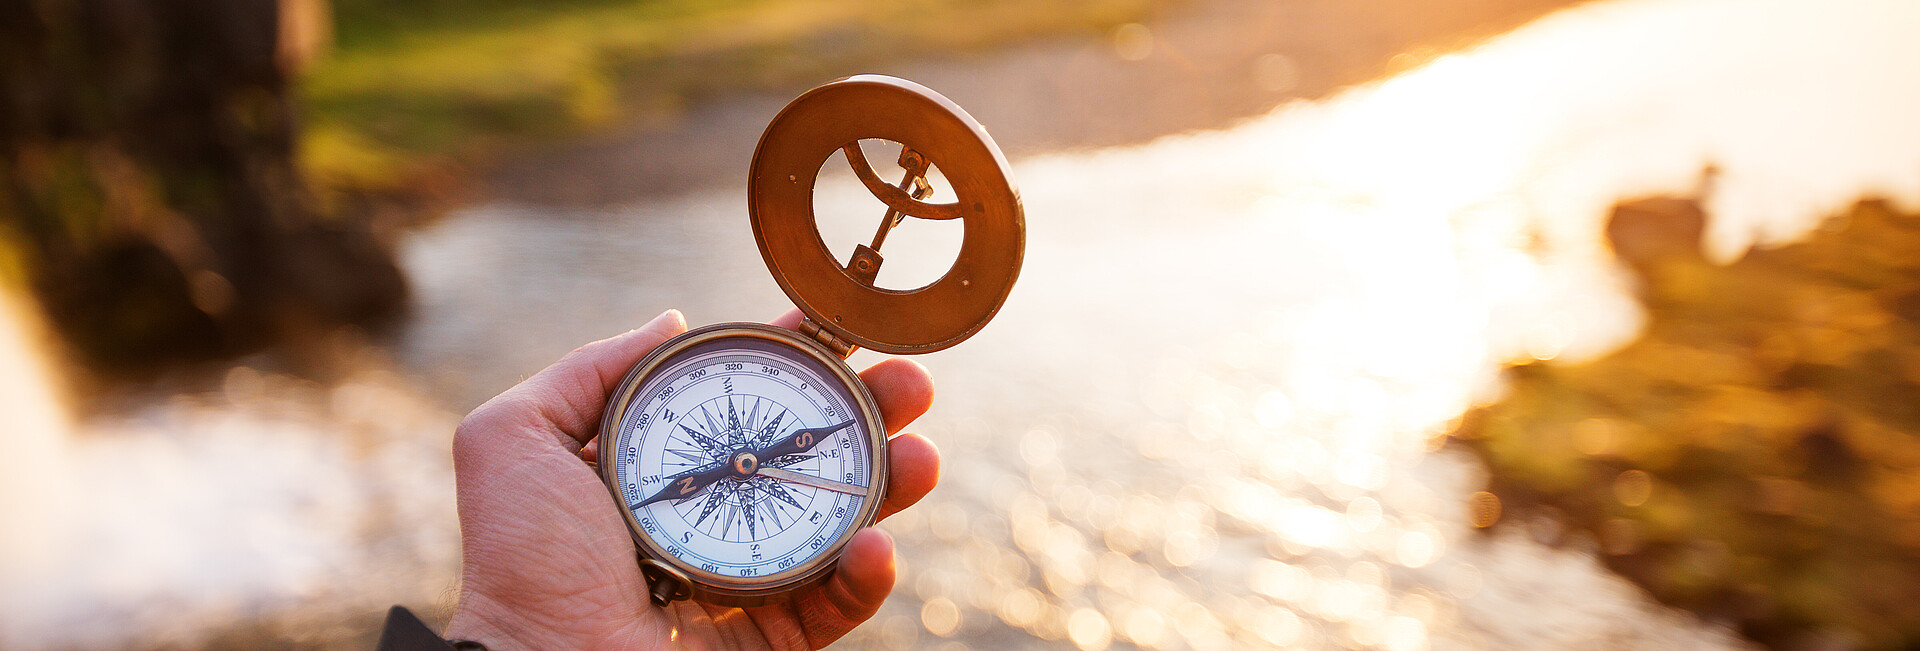 Landschaft mit altem Kompass auf der Hand des Reisenden. 